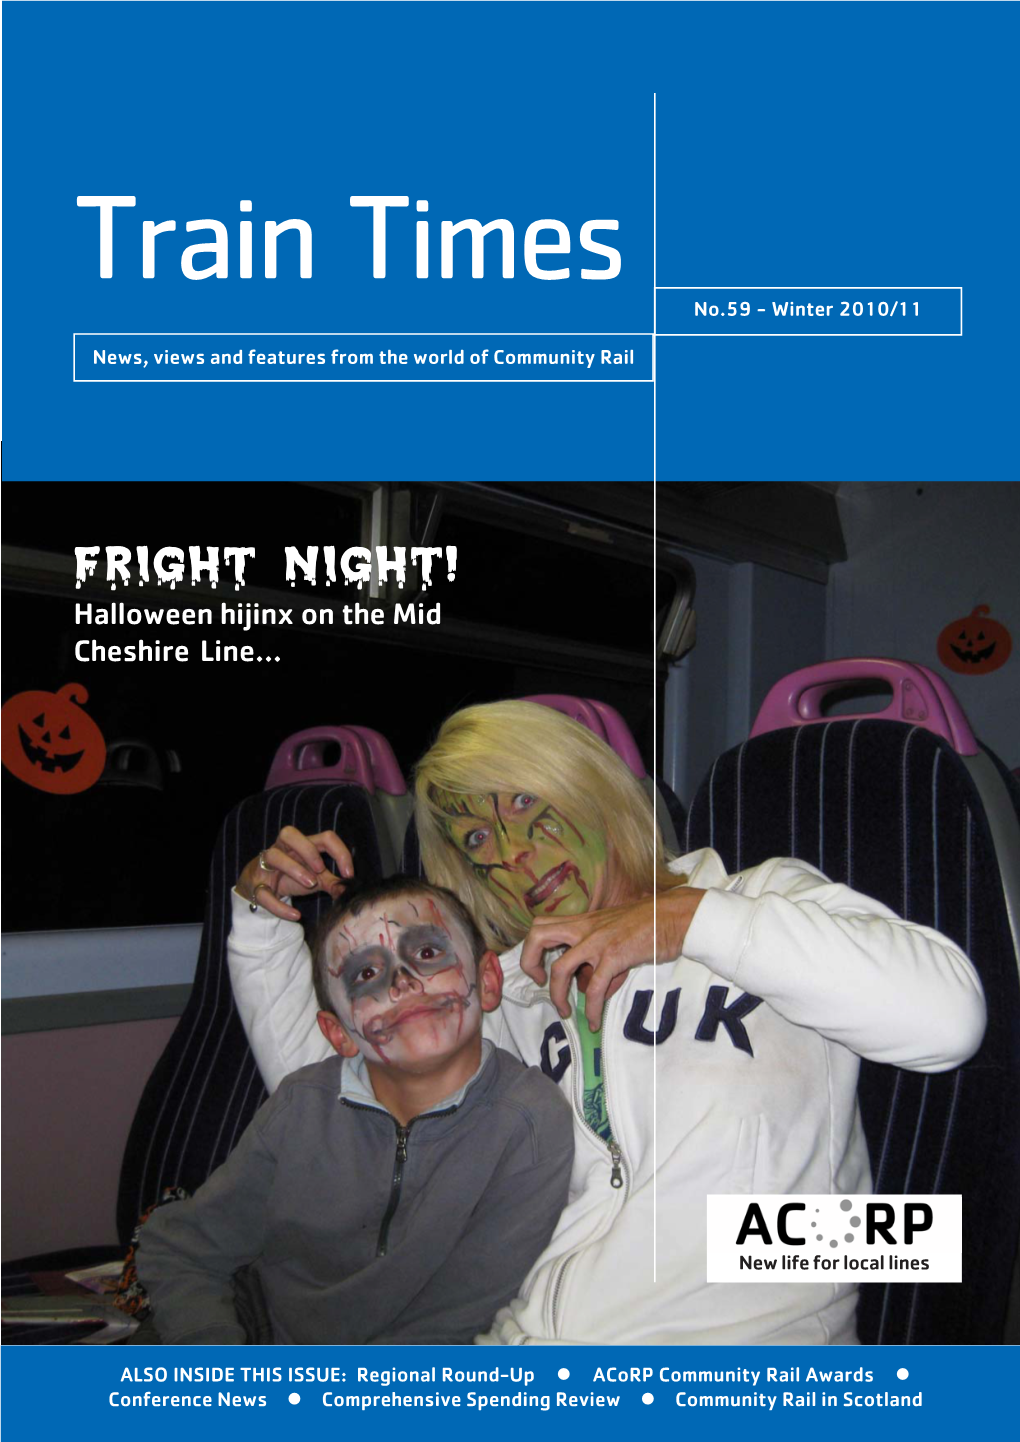 Train Times No.59 - Winter 2010/11